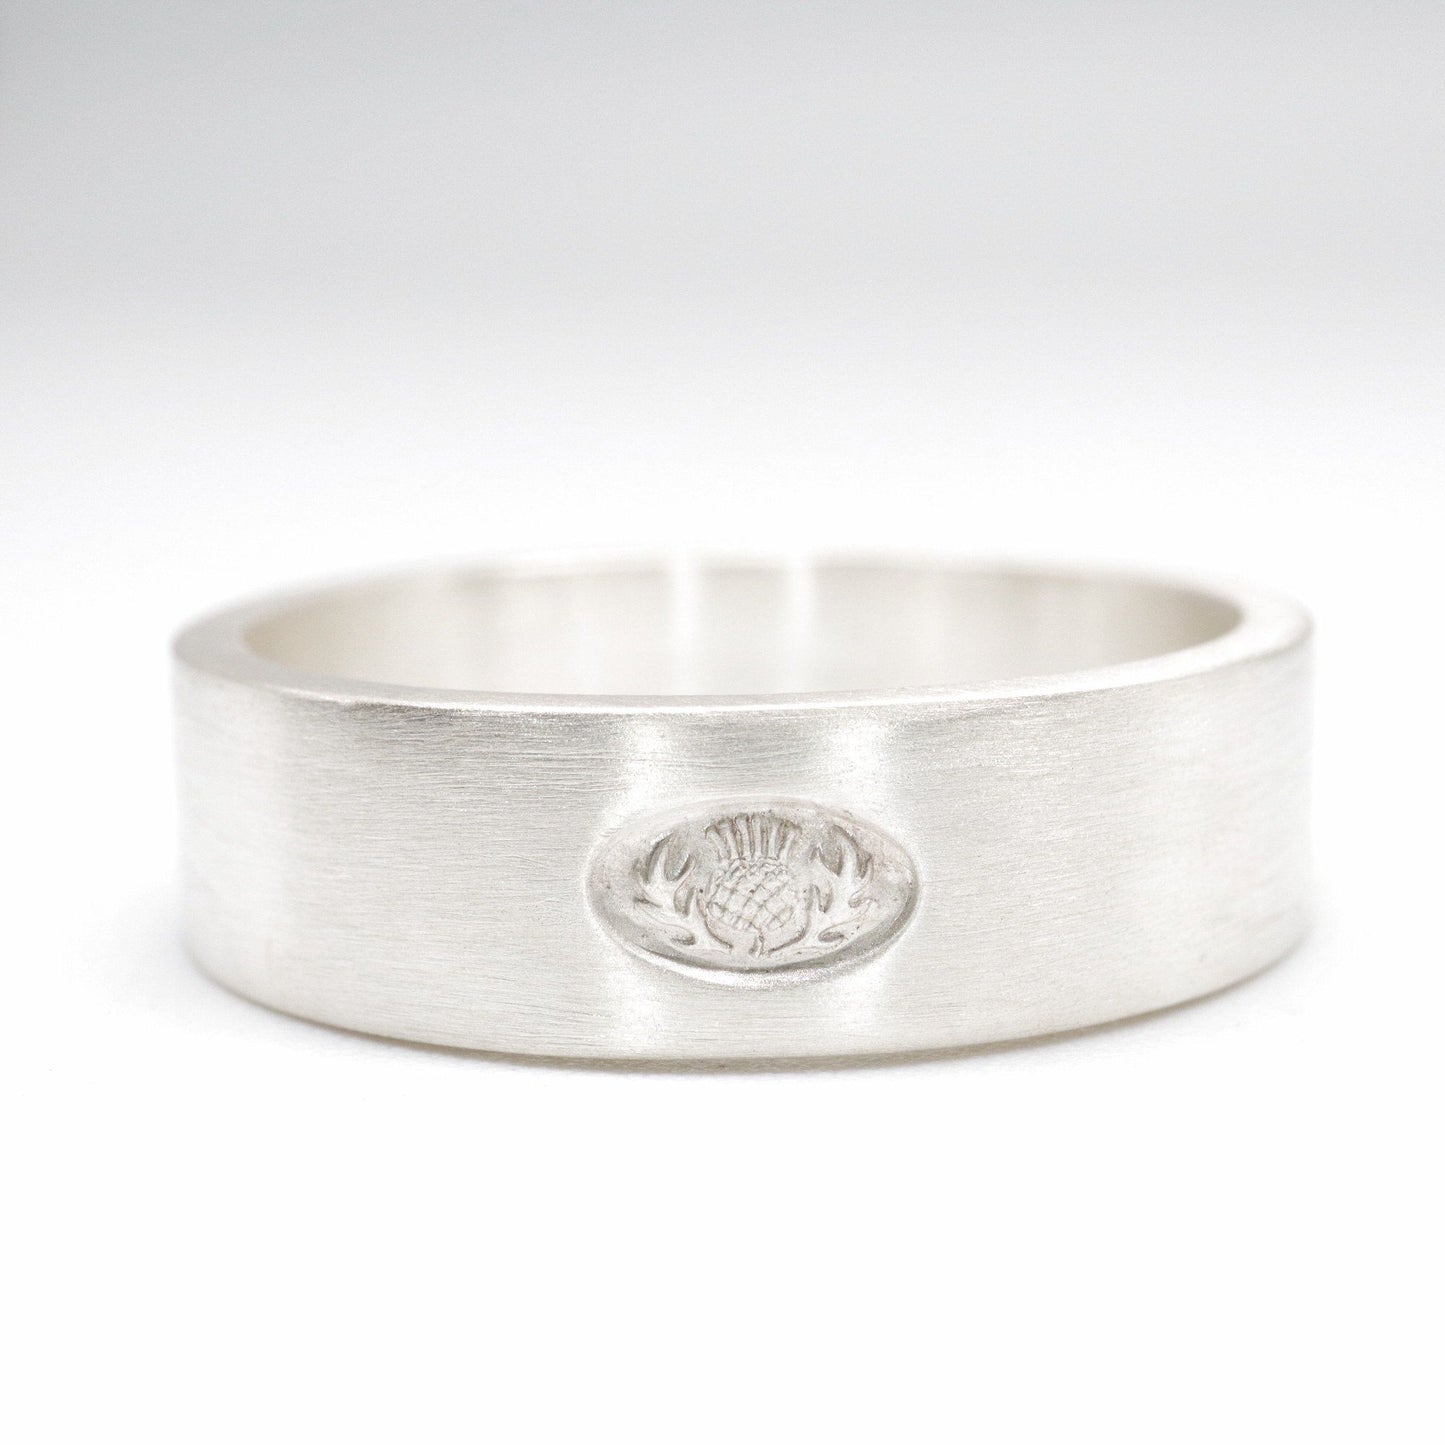 Scottish flat brushed matte white gold wedding ring. - Gretna Green Wedding Rings